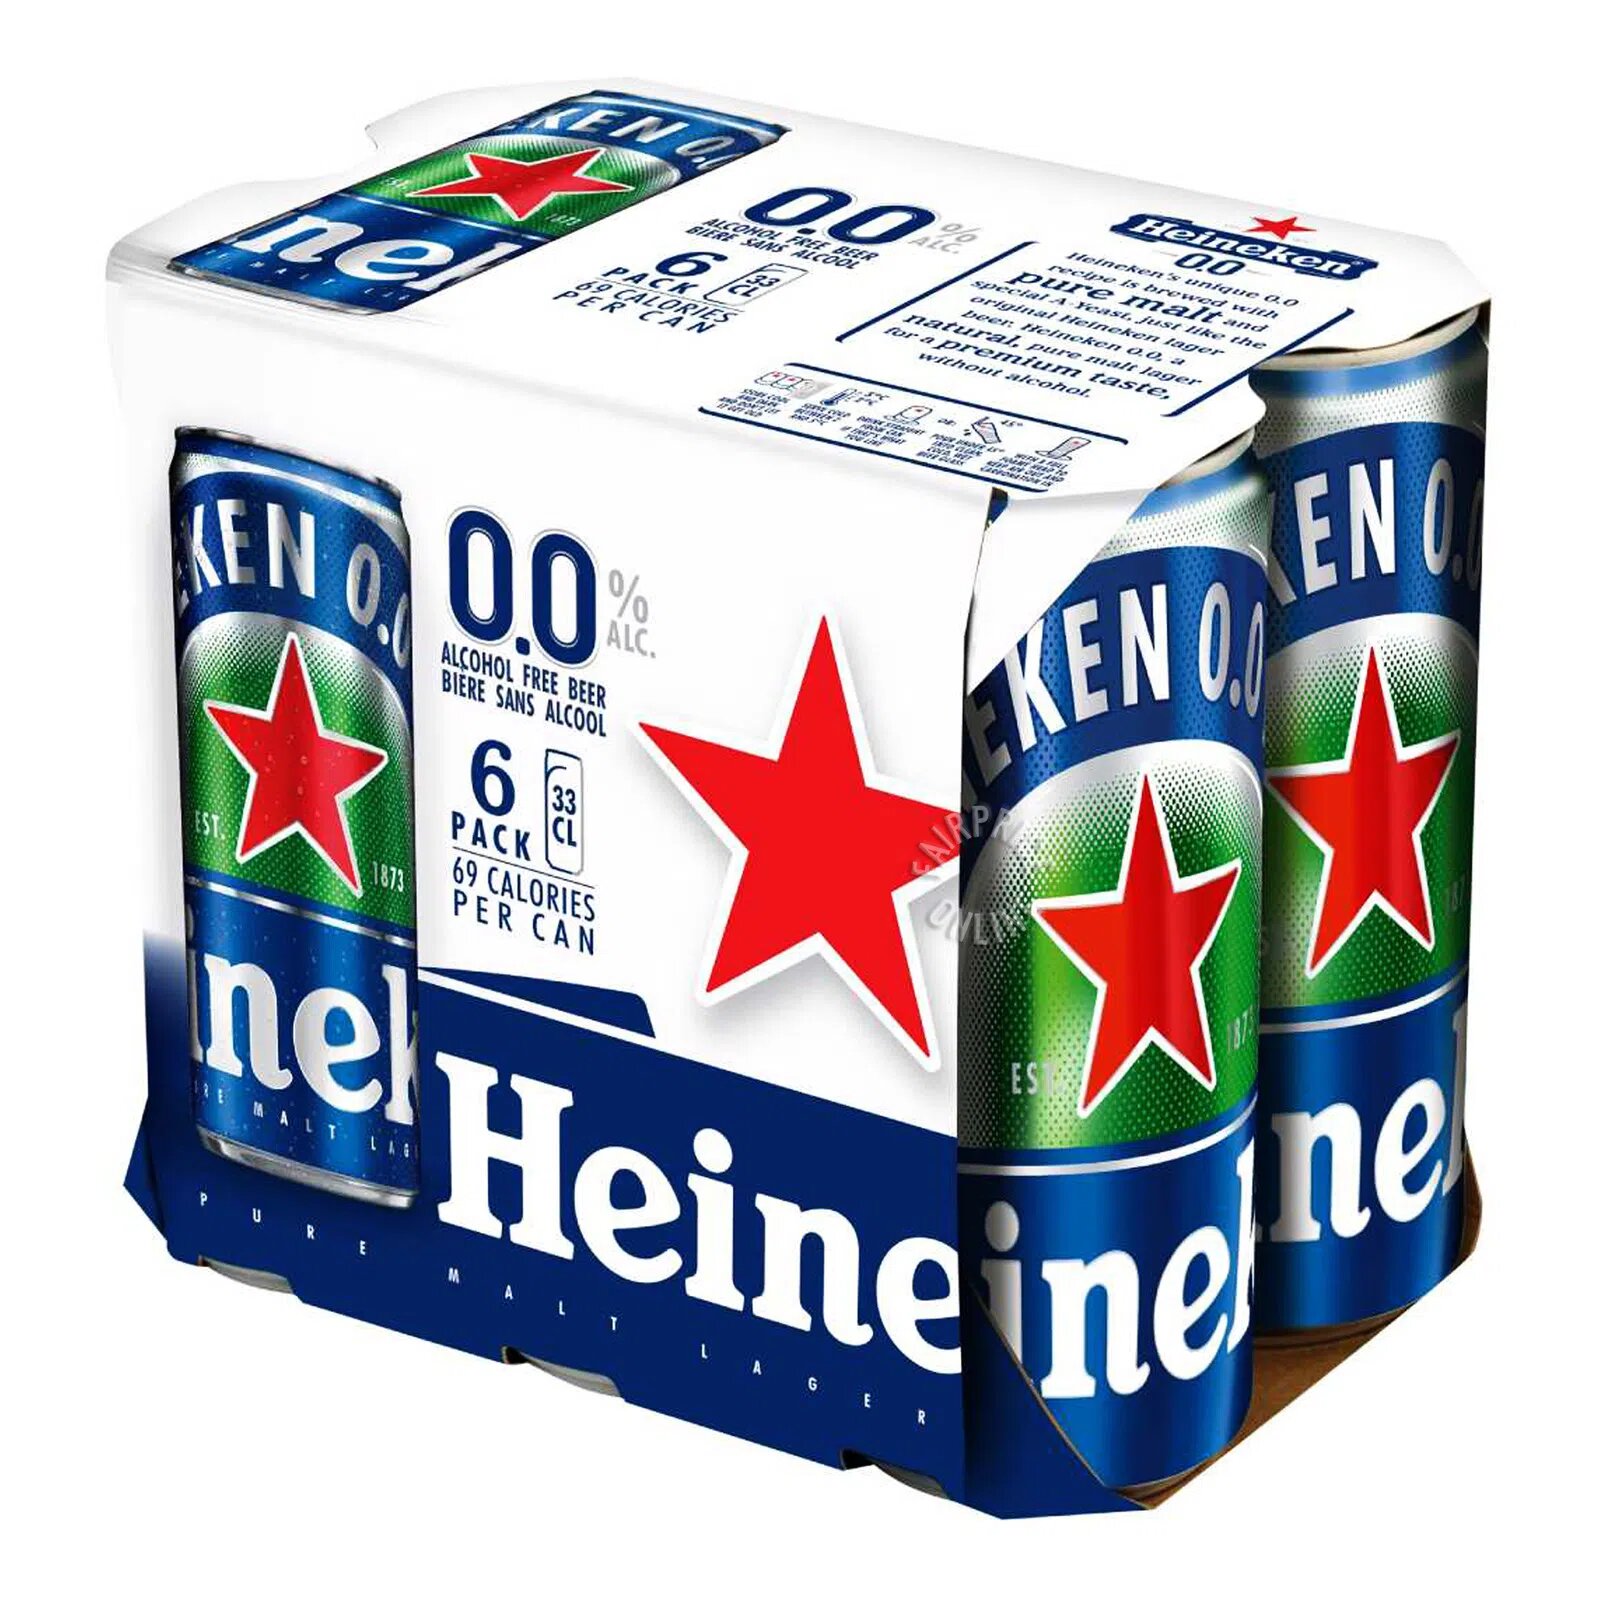 Heineken 0.0% Alcohol Free Can Beer